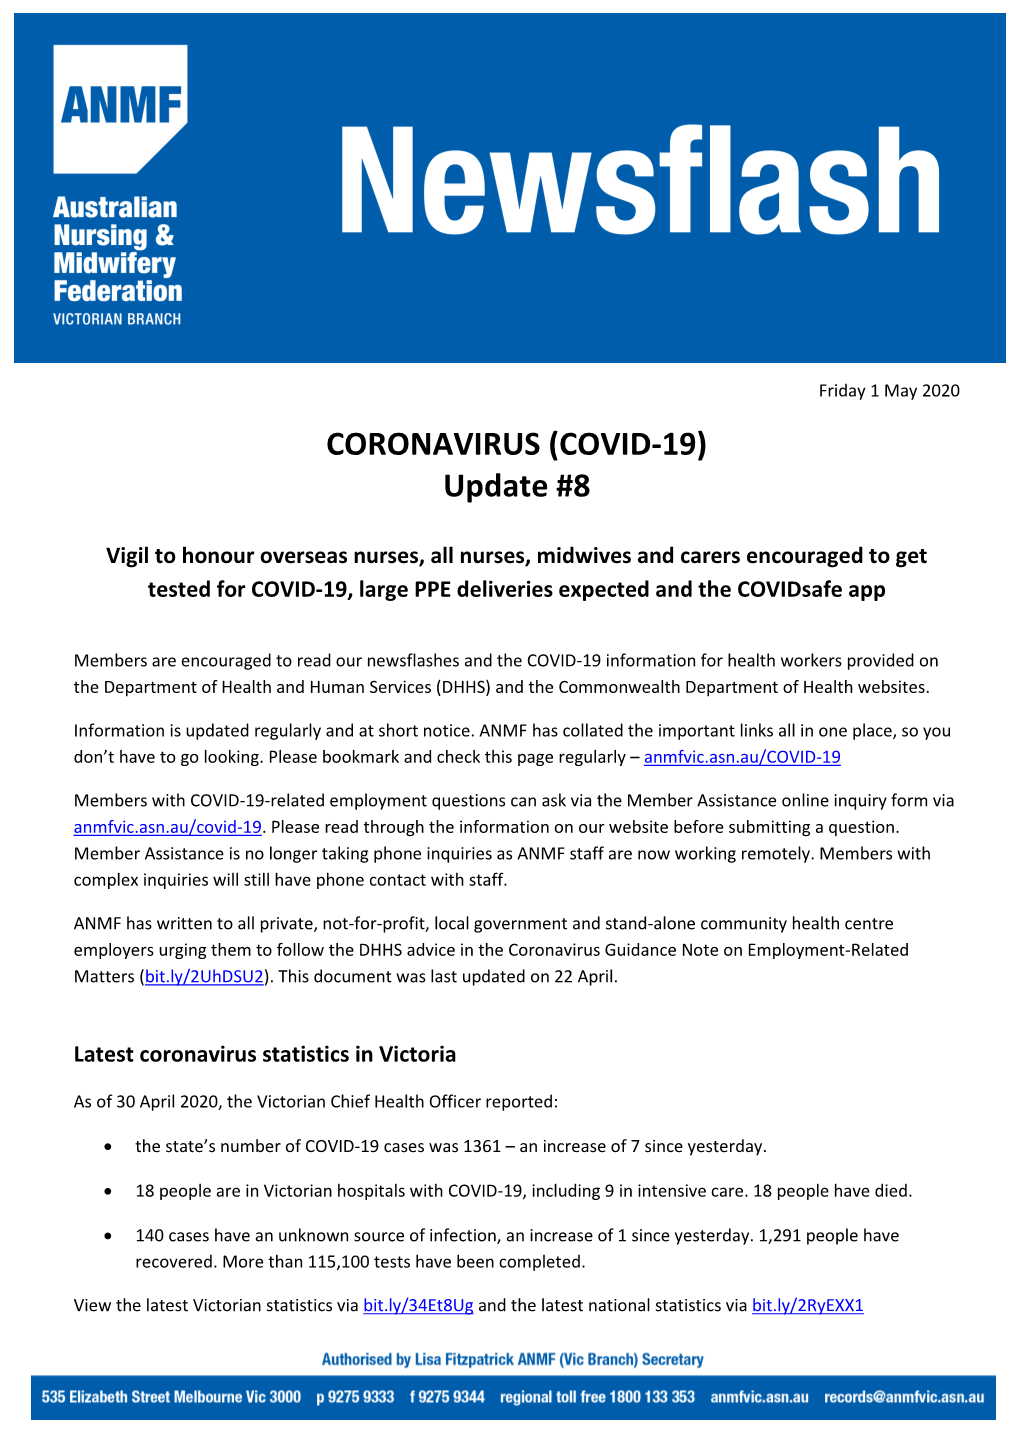 CORONAVIRUS (COVID-19) Update #8